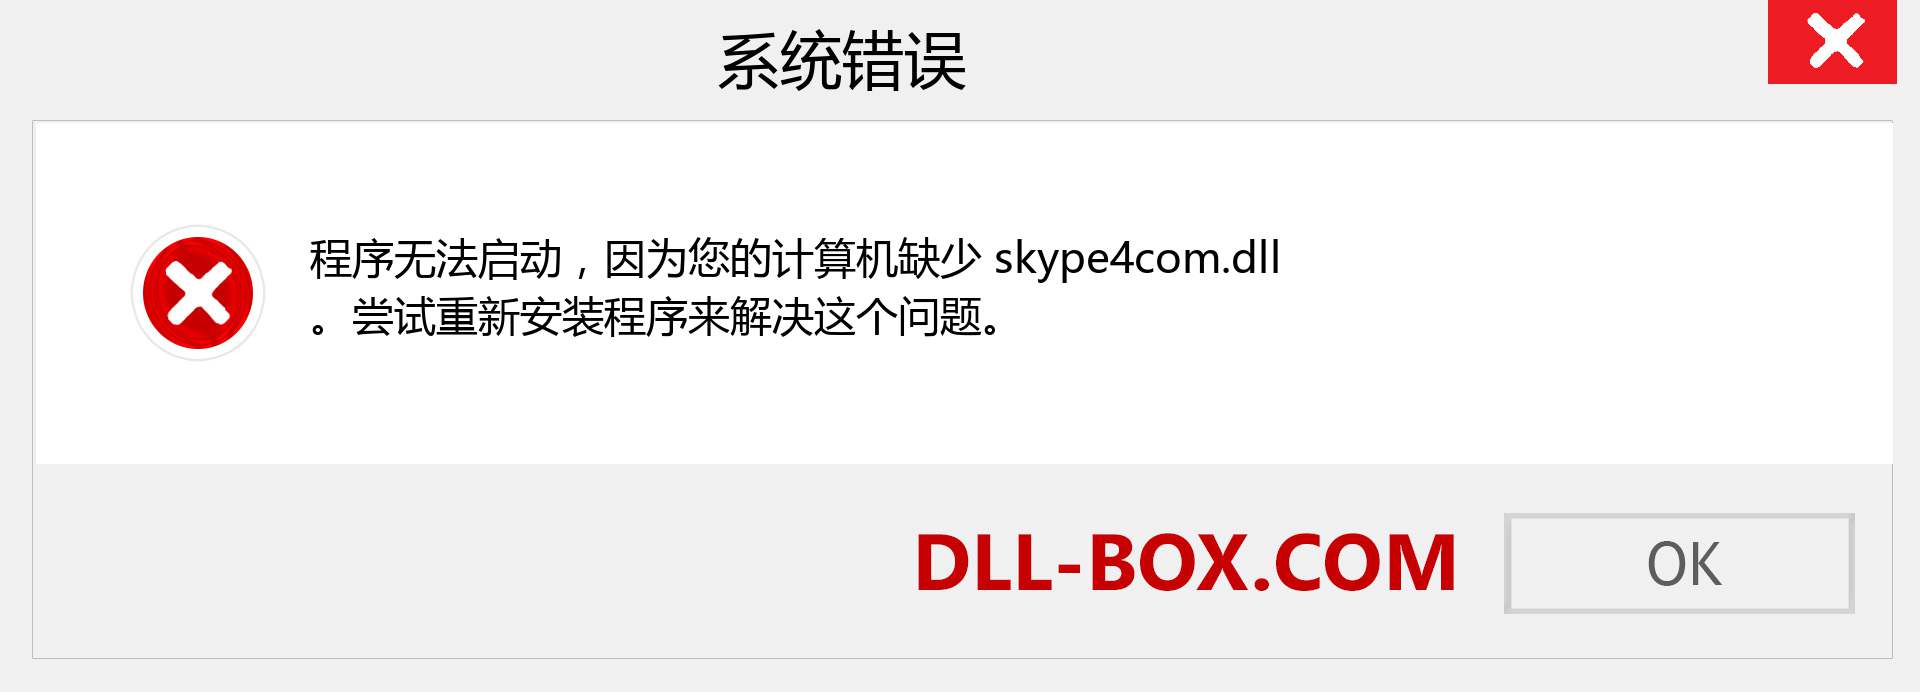 skype4com.dll 文件丢失？。 适用于 Windows 7、8、10 的下载 - 修复 Windows、照片、图像上的 skype4com dll 丢失错误